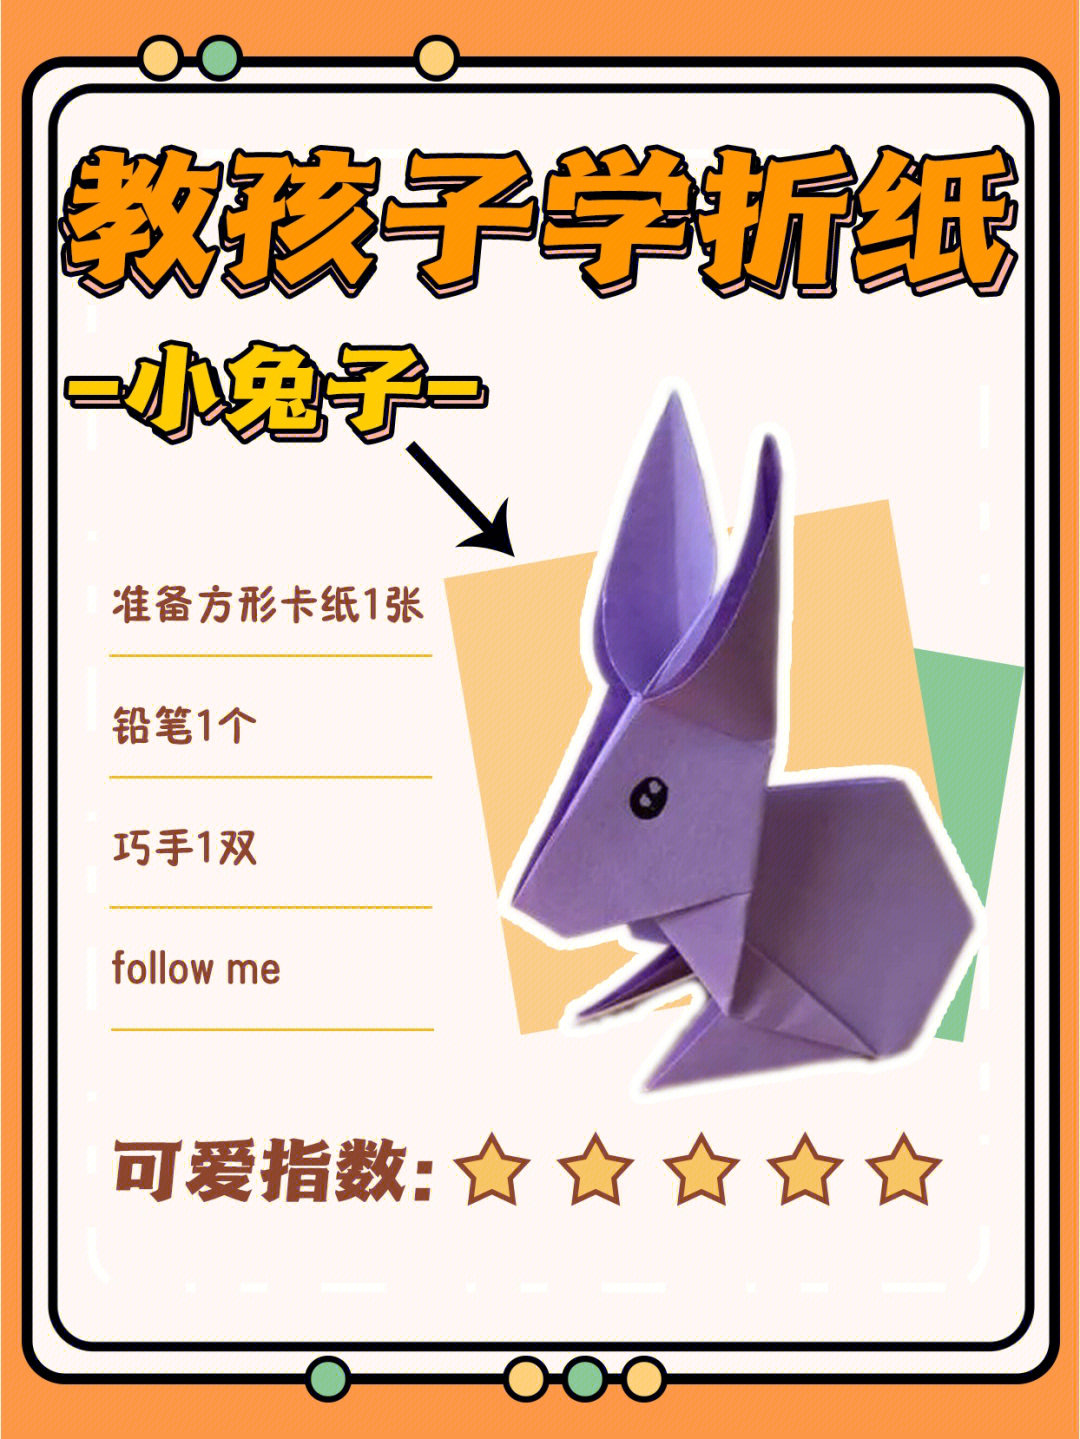 兔子的折法 折纸图片